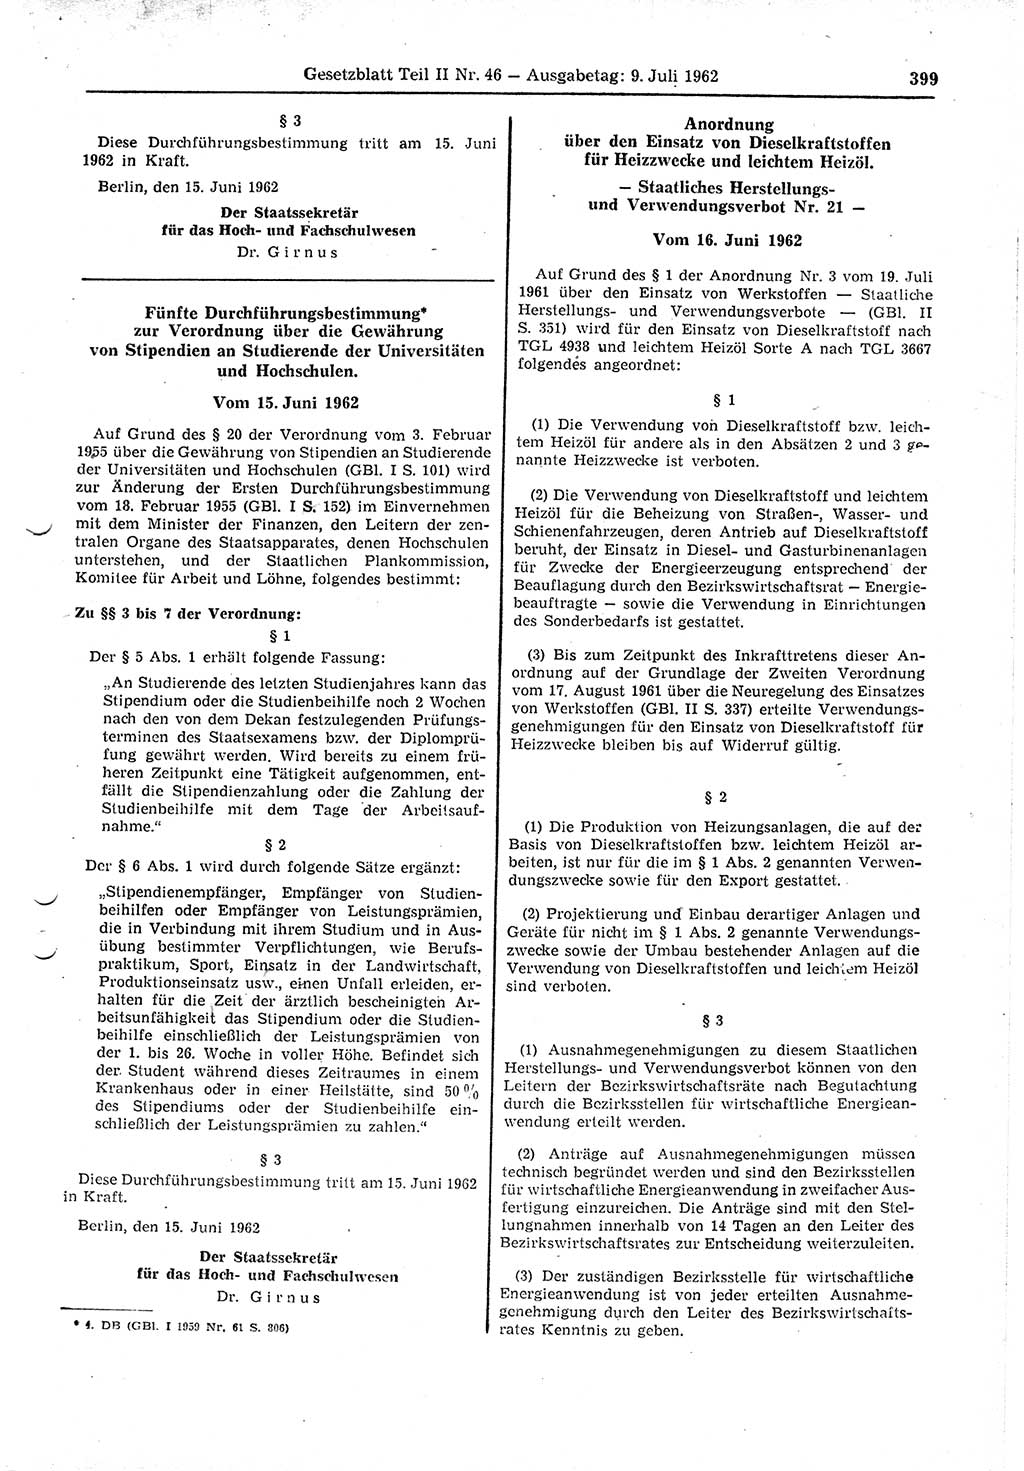 Gesetzblatt (GBl.) der Deutschen Demokratischen Republik (DDR) Teil ⅠⅠ 1962, Seite 399 (GBl. DDR ⅠⅠ 1962, S. 399)